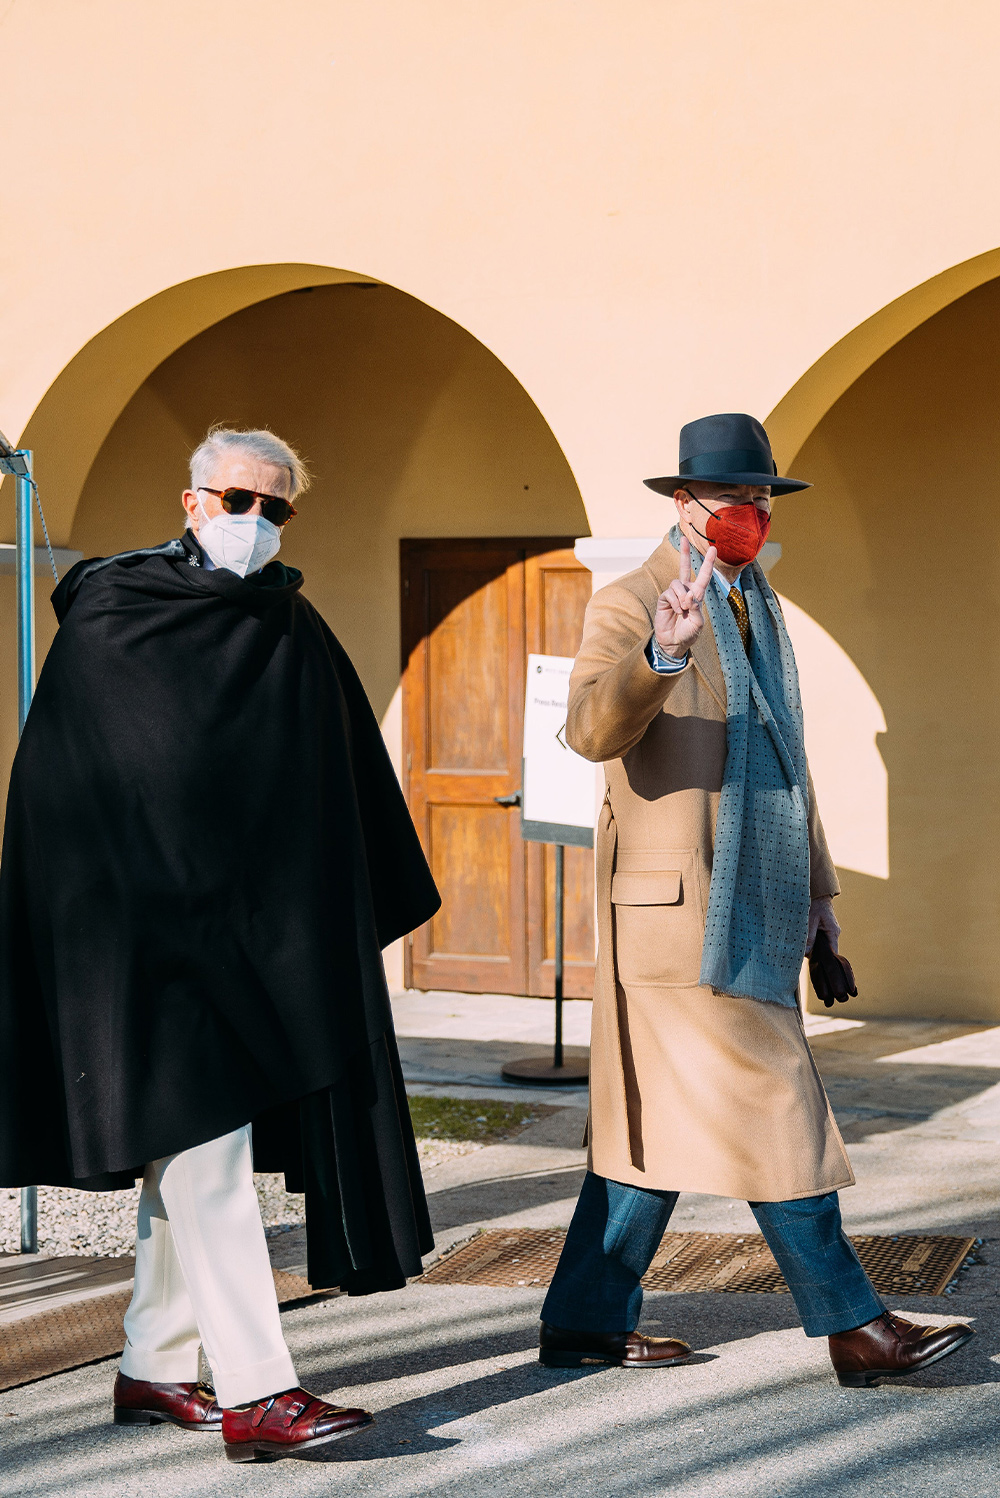 Pitti Uomo үзэсгэлэн дээрх Итали эрчүүдийн street style төрхүүд (фото 3)